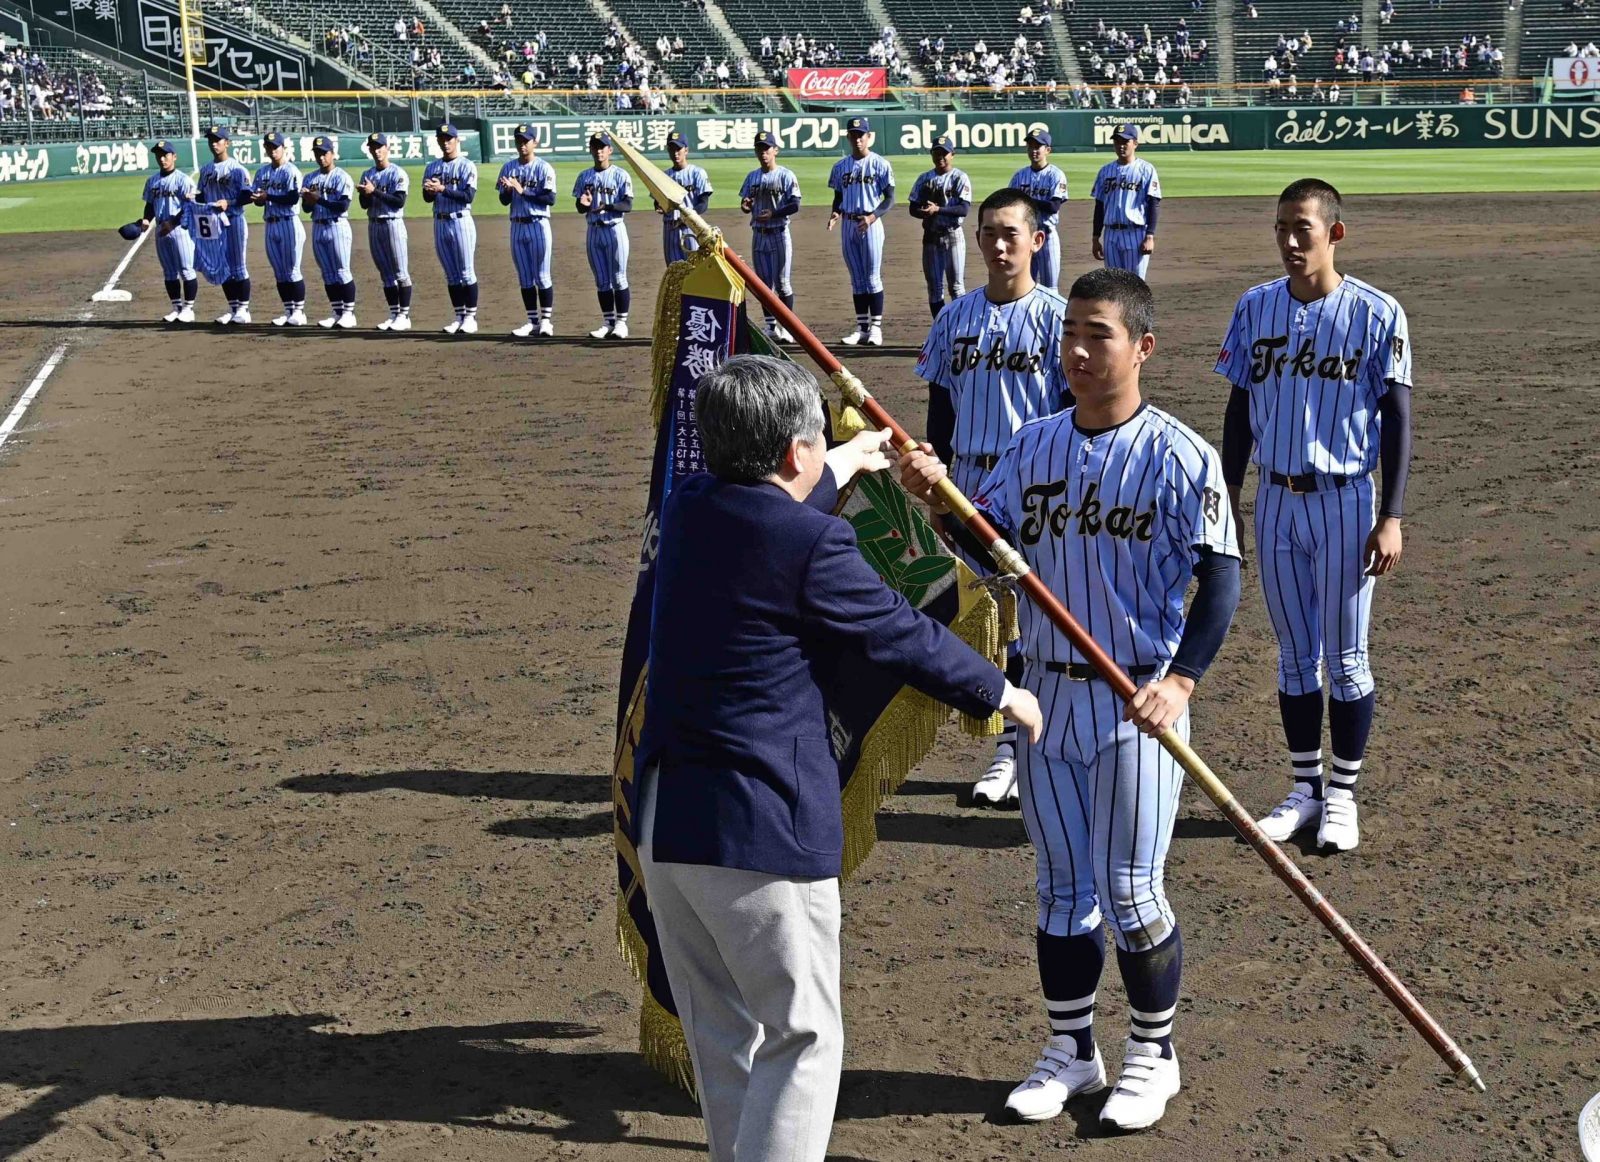 Tokaidai Sagami of Kanagawa Prefecture wins the Spring Koshien